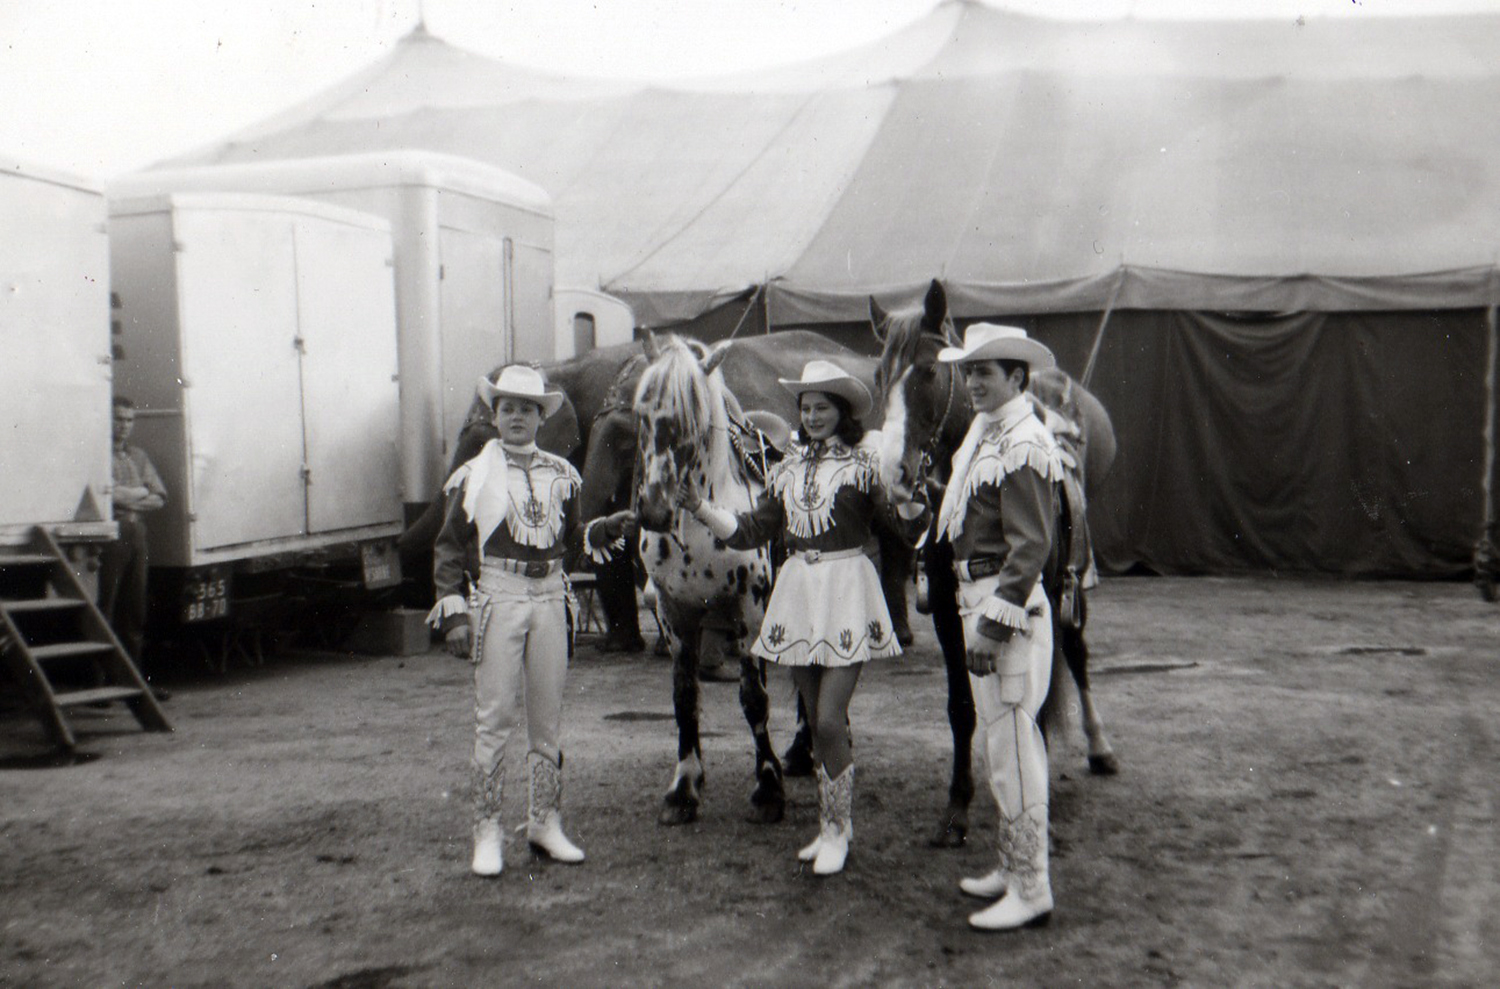 Patrick, Bella, and Alexis Gruss, Jr. at the Grand Cirque de France (1964)